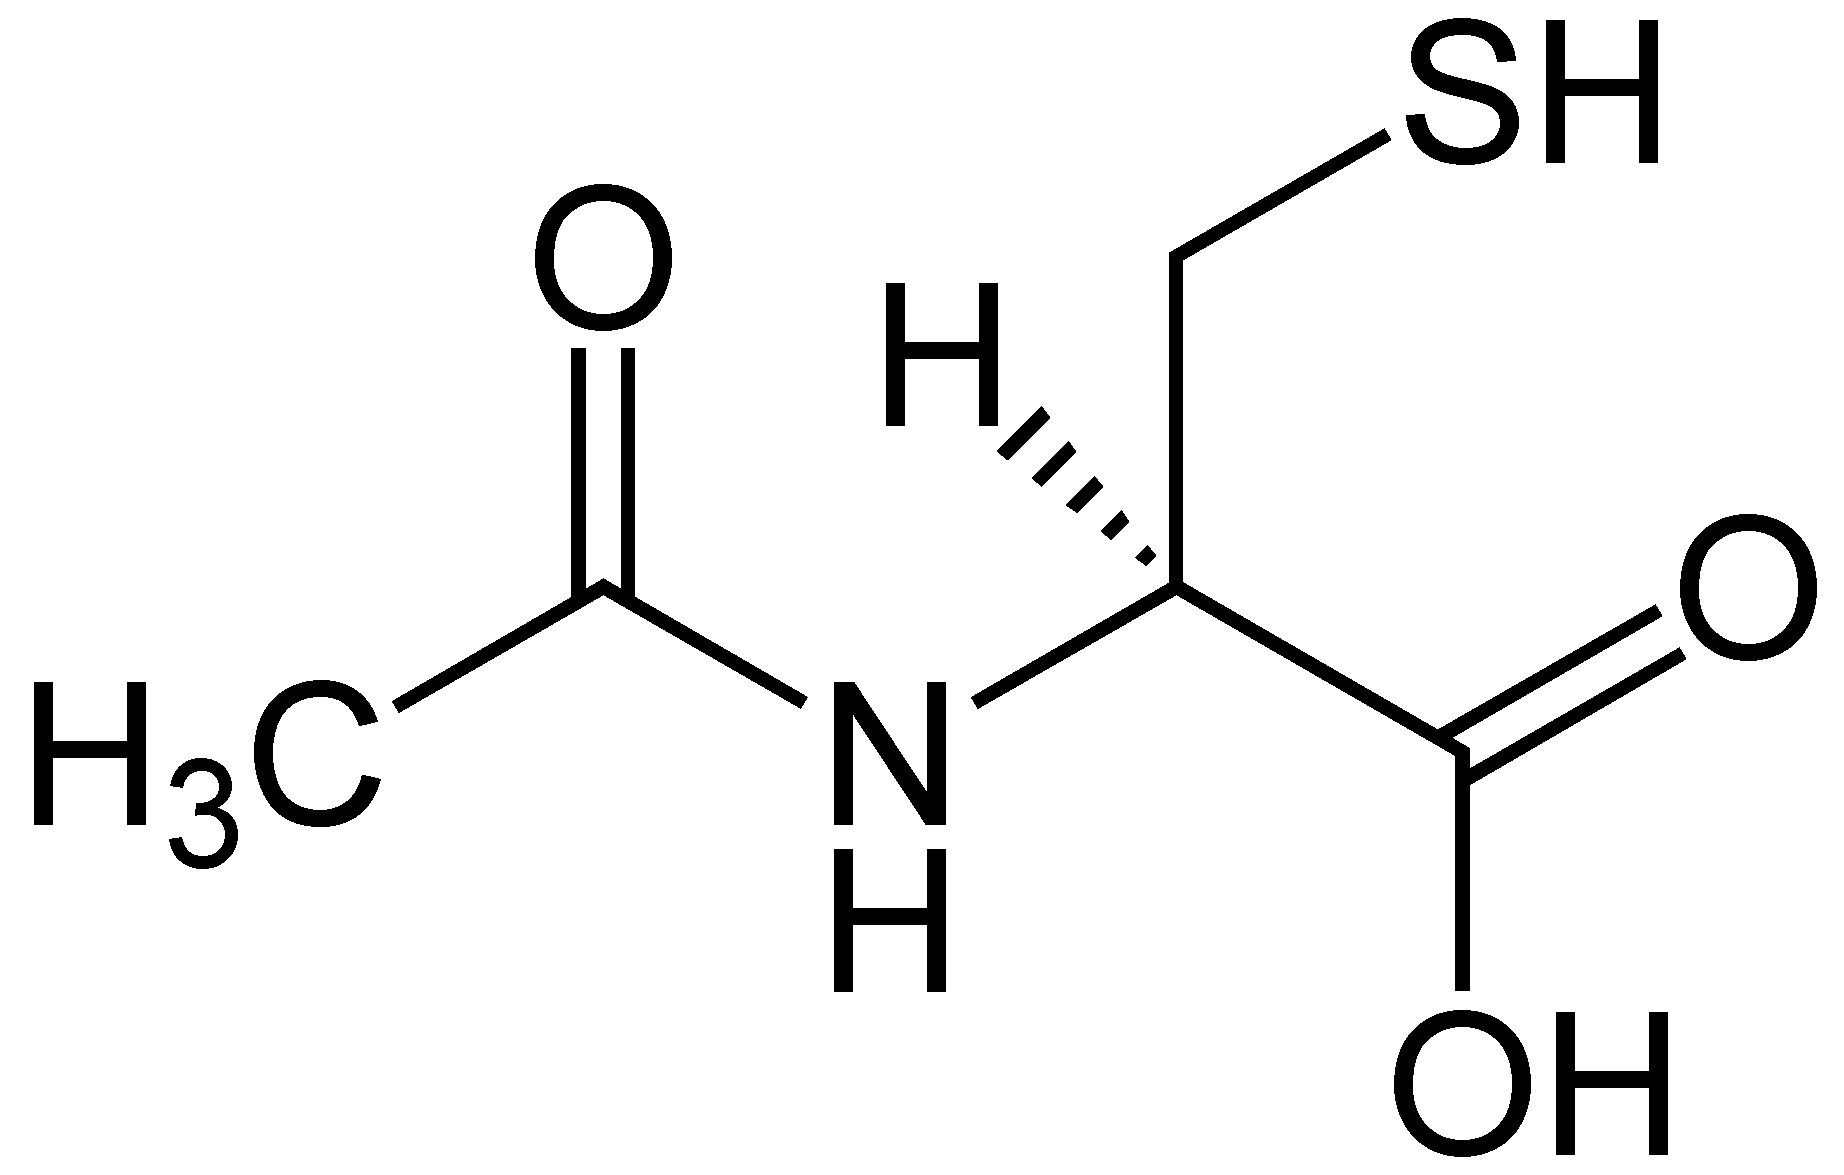 N-Acetyl-L-Cystein